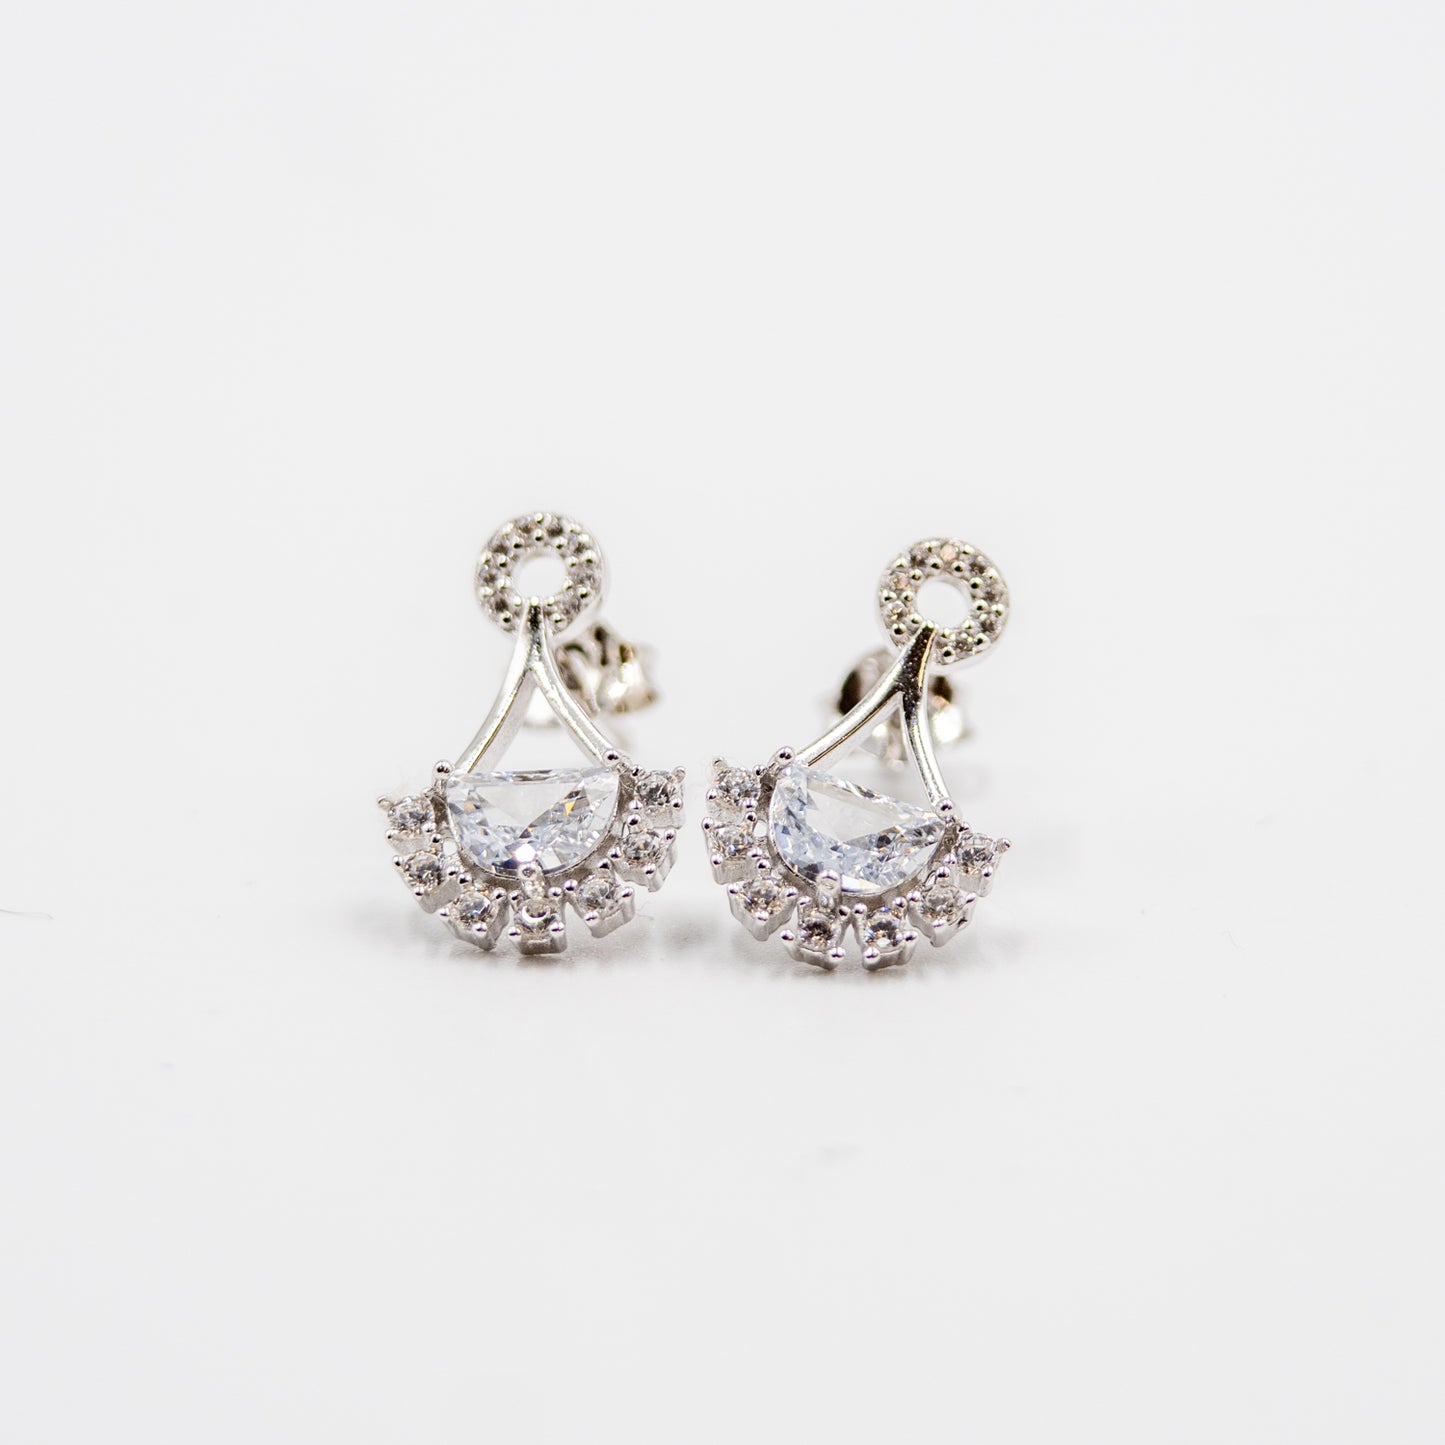 DK-925-185 sterling silver earrings